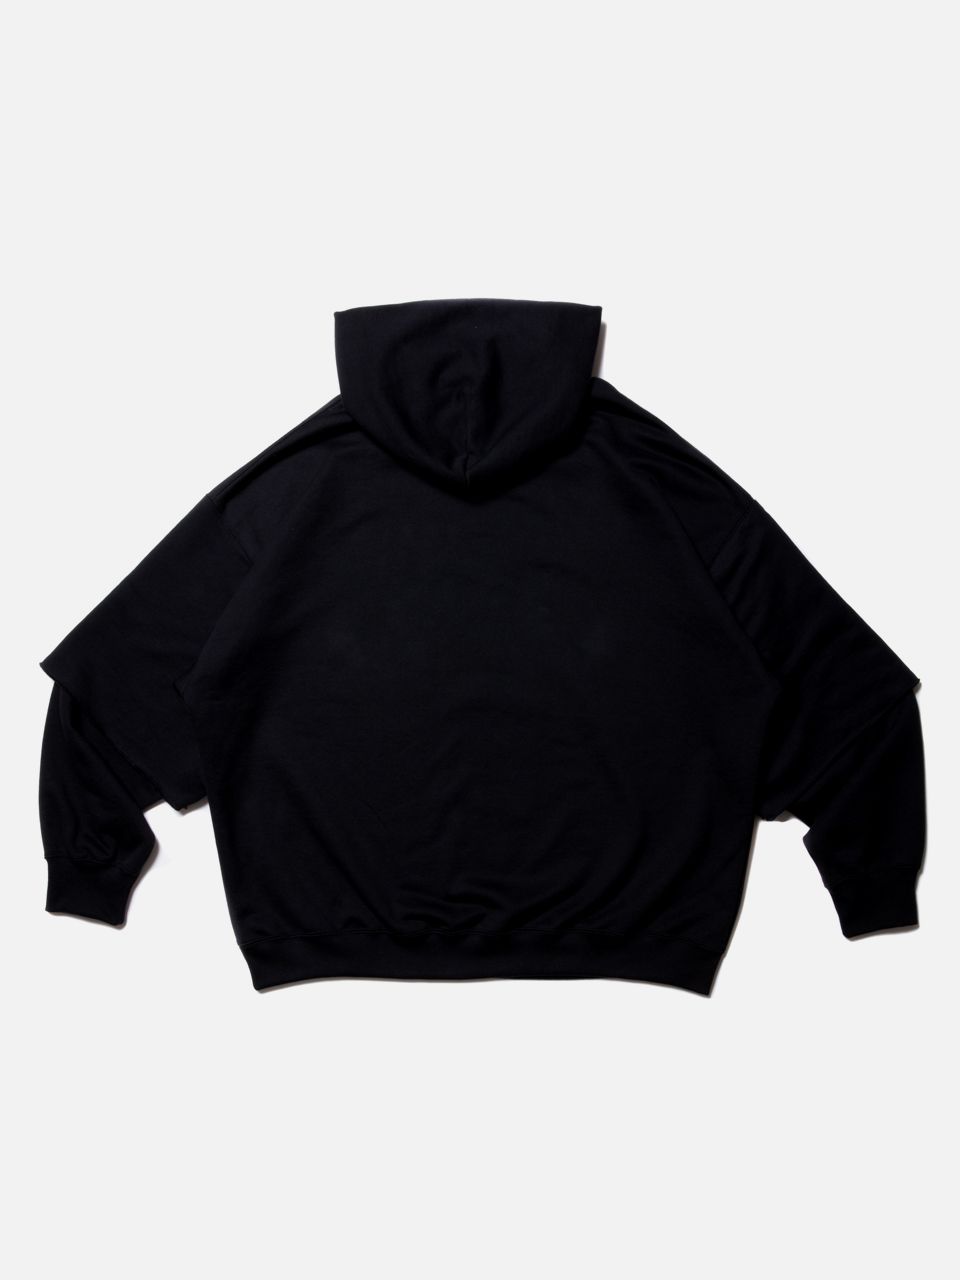 COOTIE / Cellie Crewneck Sweatshirt -Black- | 80-HACHIMARU-